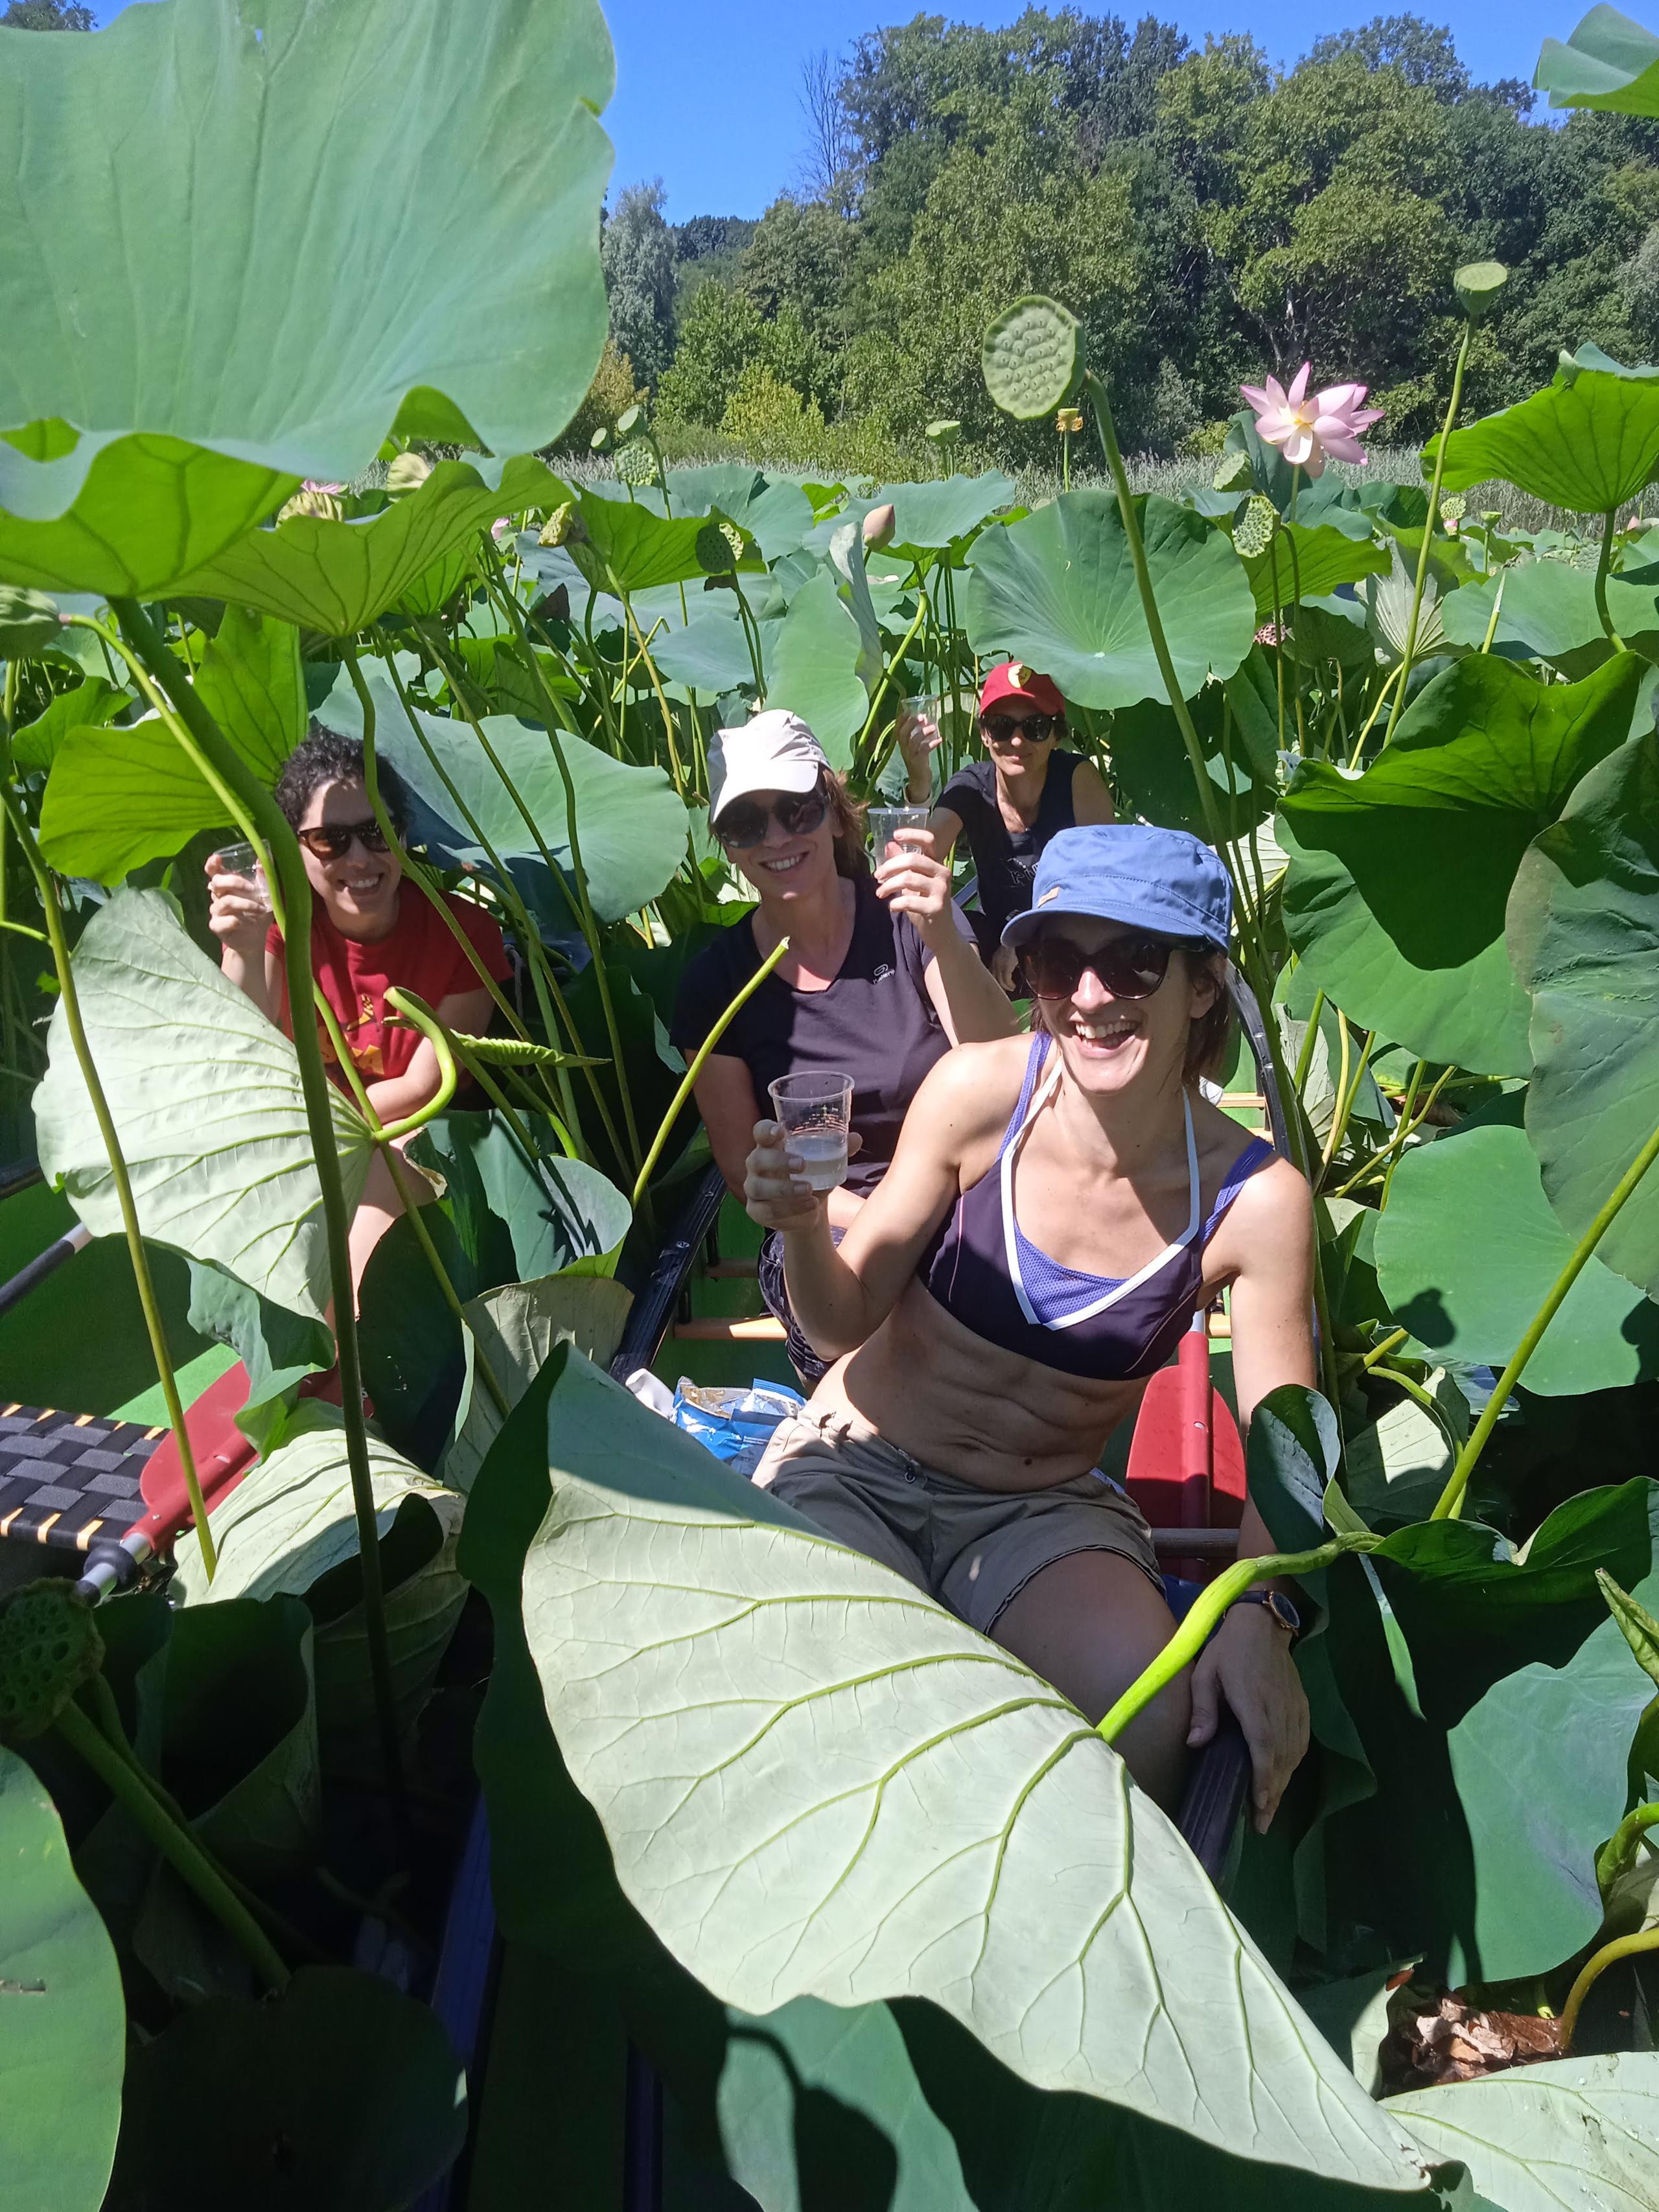 Addio al nubilato tra i fiori di loto in canoa canadese